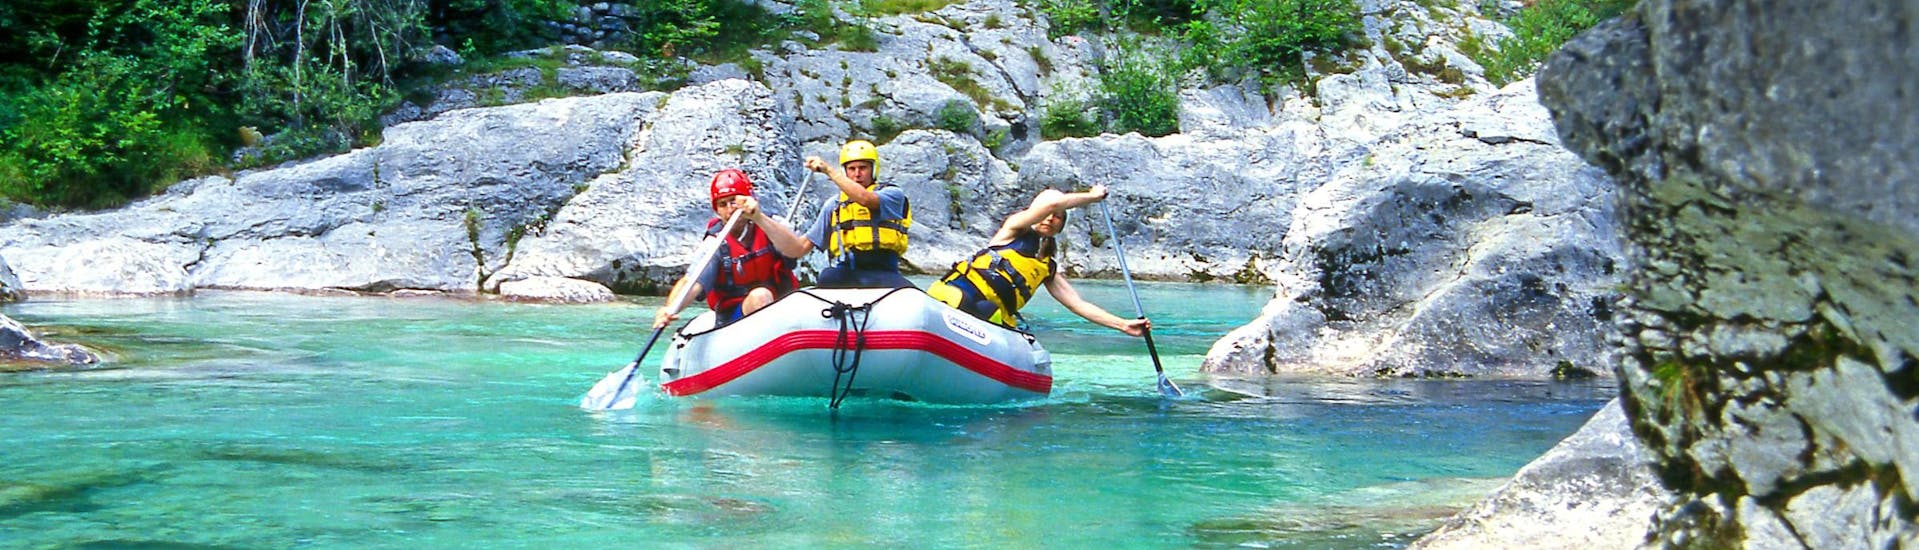 Un groupe de jeunes gens s'amuse lors d'une activité en eau vive dans la destination de rafting et canyoning Sušec. 